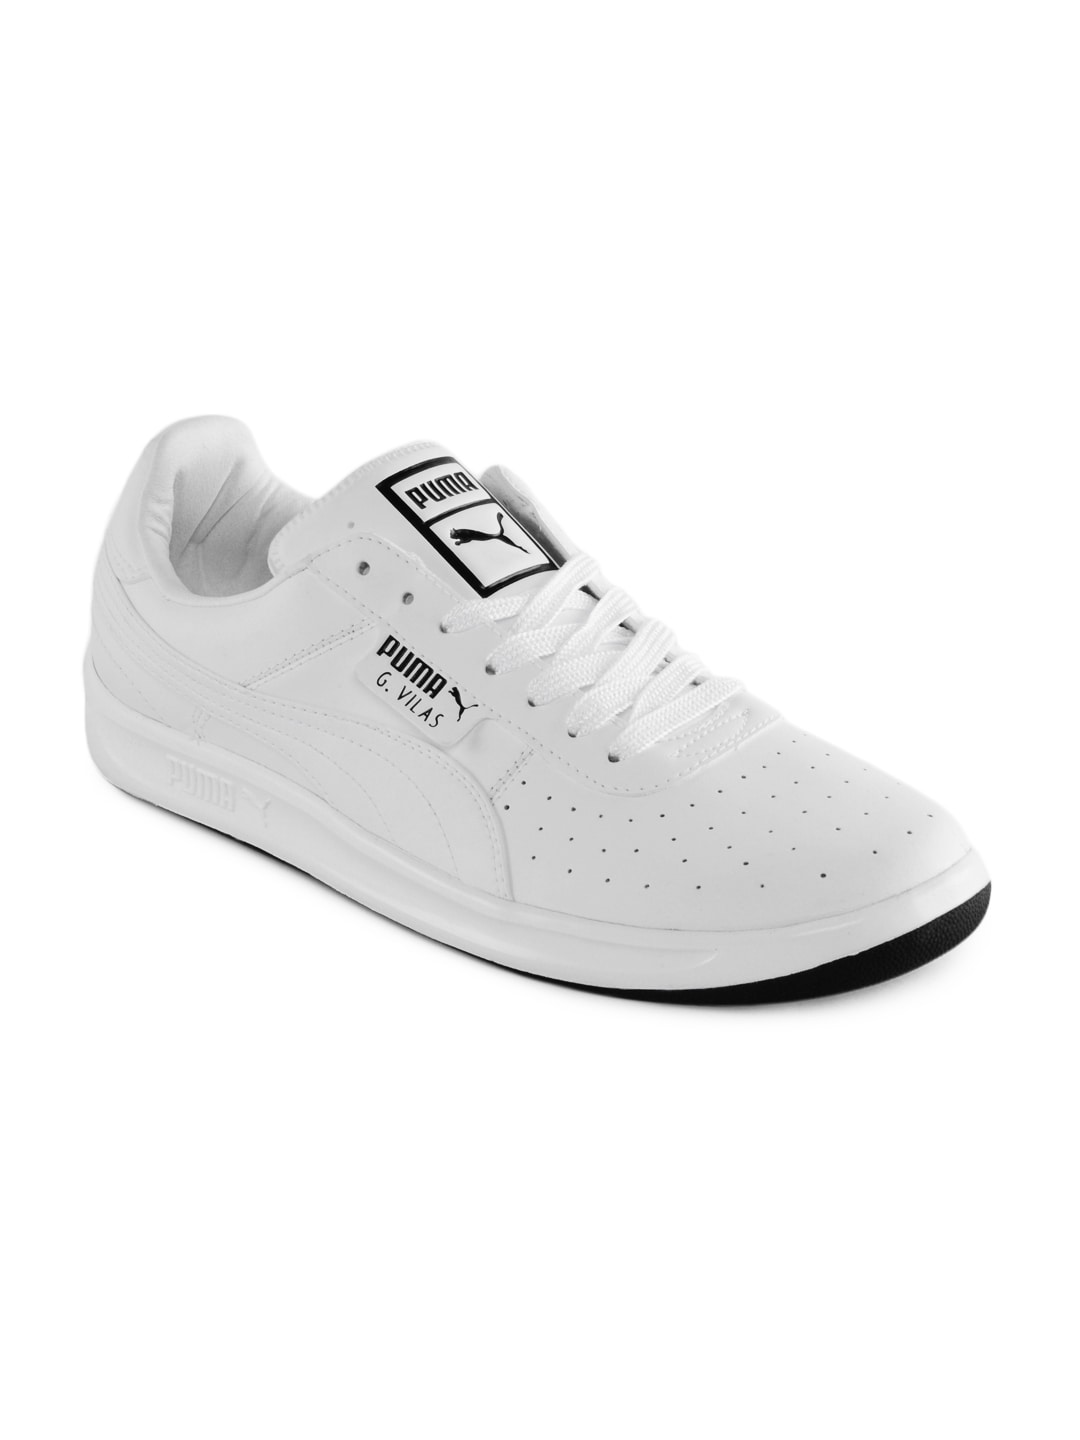 Puma Men White Basics Shoes